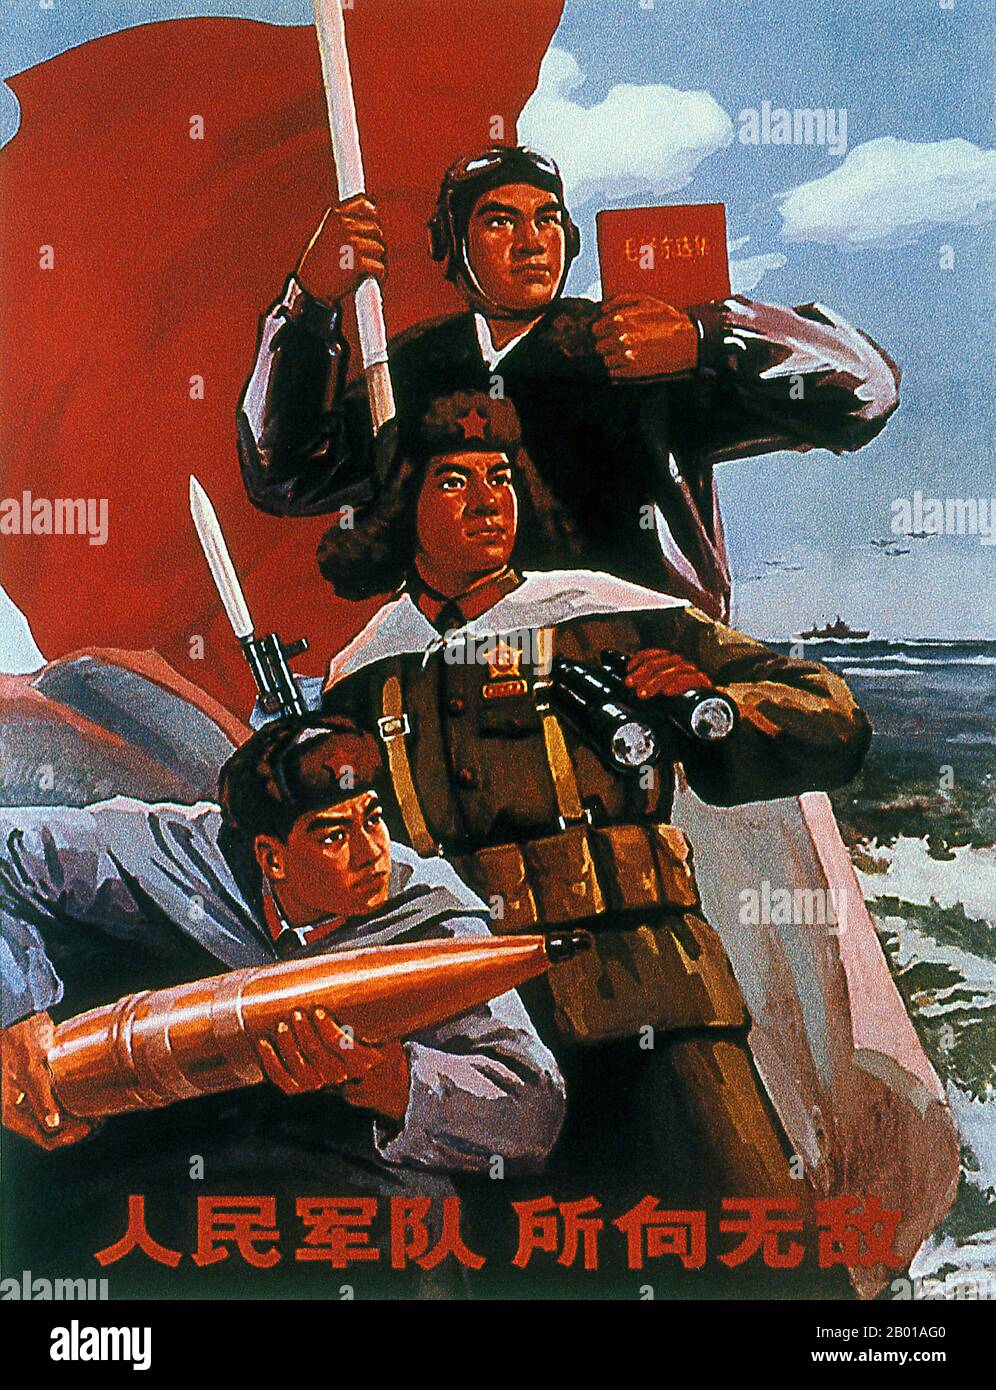 Cina: Poster di propaganda della Rivoluzione Culturale (c. 1966-1973) eulogizzazione della marina cinese e del pensiero di Mao Zedong, c.. 1968. La Marina militare dell'Esercito di Liberazione del Popolo (PIANO o PLA Navy, cinese: Rénmín Jiěfàngjūn Hǎijūn) è il ramo navale dell'Esercito di Liberazione del Popolo (PLA), l'esercito della Repubblica popolare Cinese. Fino all'inizio del 1990s, la marina svolse un ruolo subordinato alle forze terrestri del PLA. Da allora, è stata sottoposta ad una rapida modernizzazione. È il secondo servizio navale più grande del mondo, con una forza di personale di oltre 250.000 persone. Foto Stock